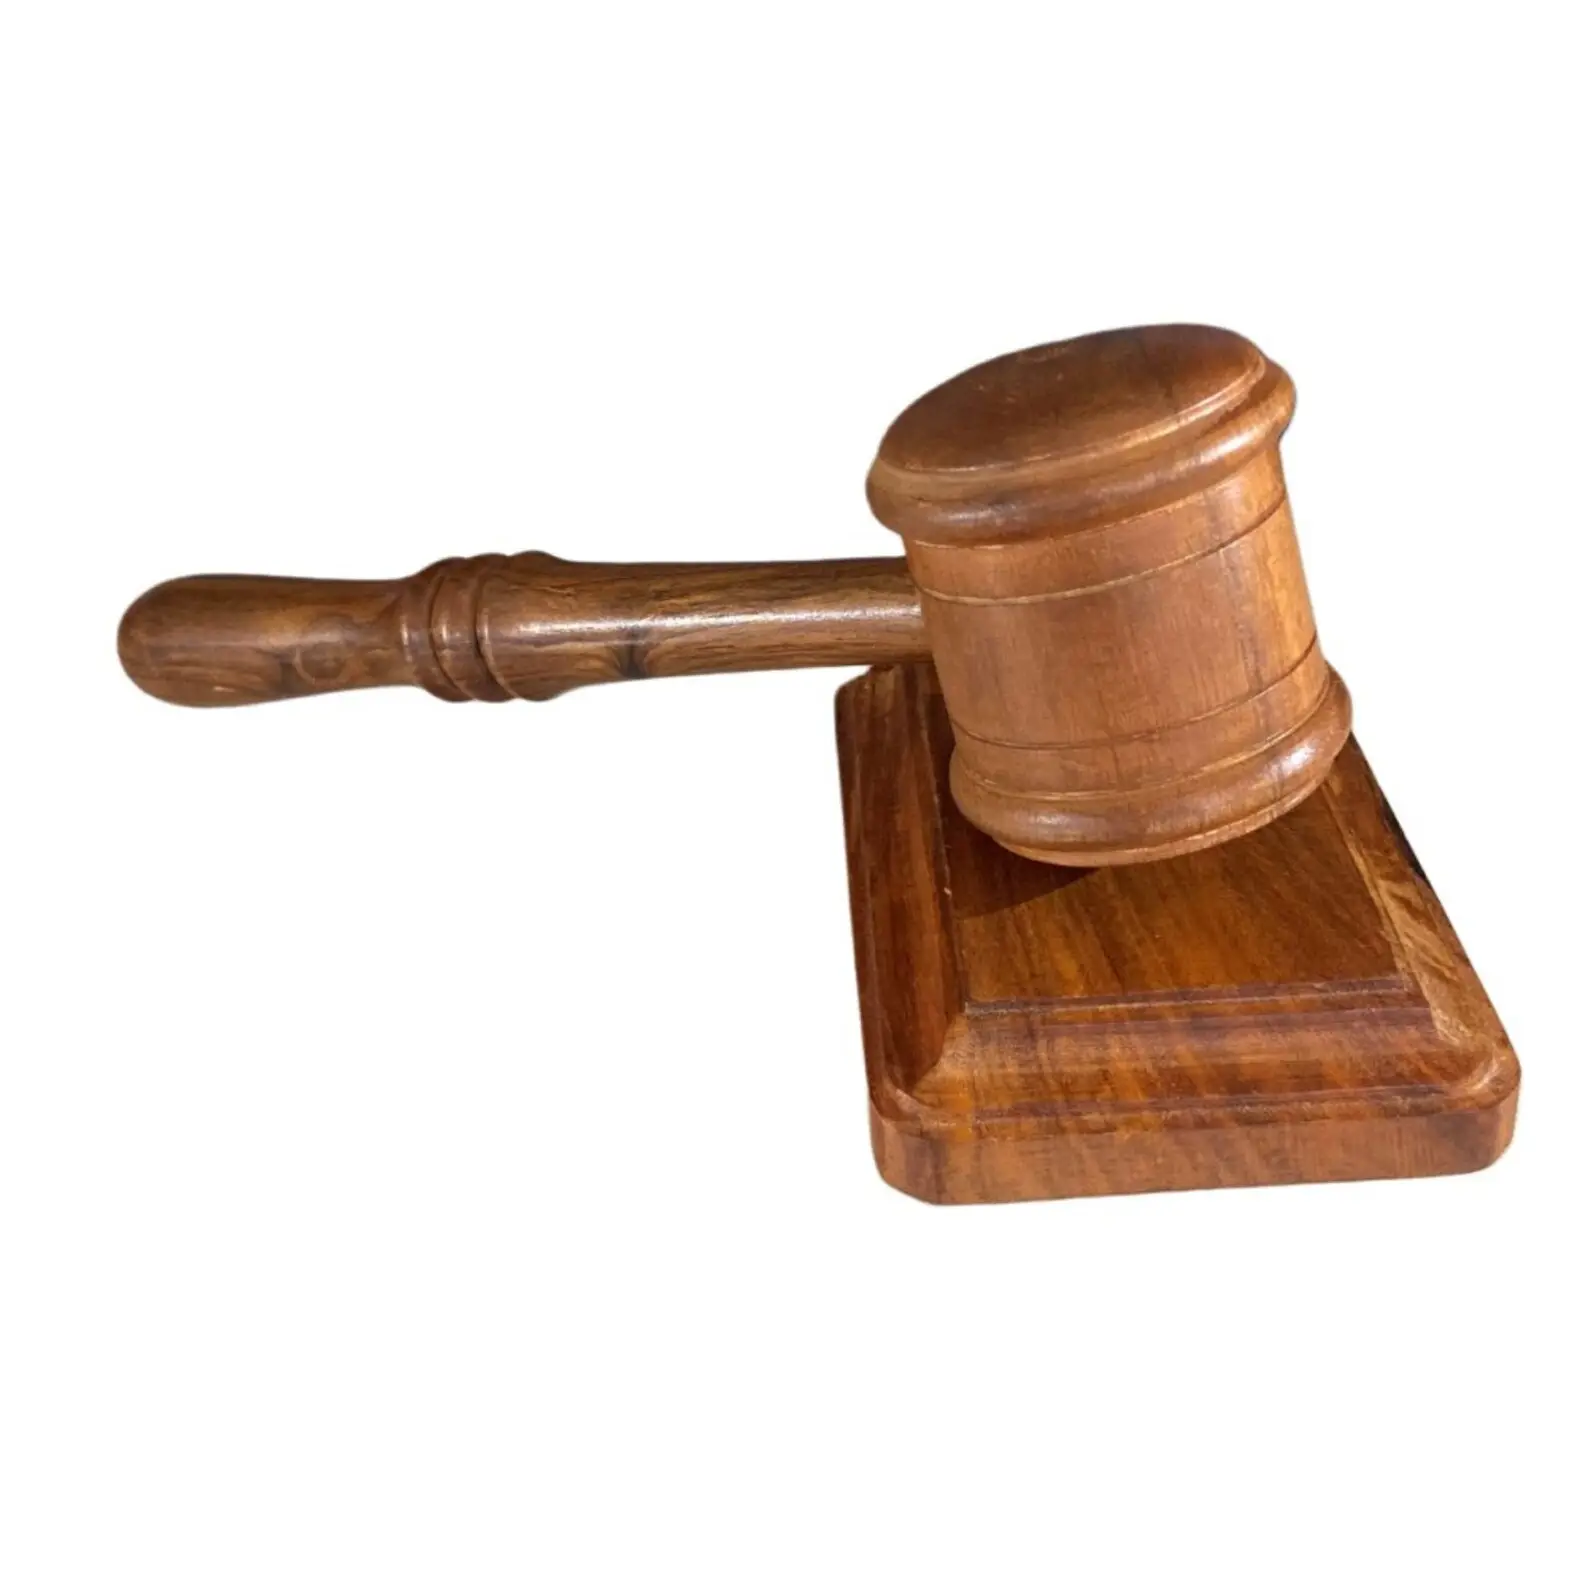 مطرقة خشبية محترفة ومصنوعة يدويا مطرقة محكمة ومطرقة خشبية صغيرة مثالية للحفر عليها للقضاة المحامين شركة المحكمة بمزادات